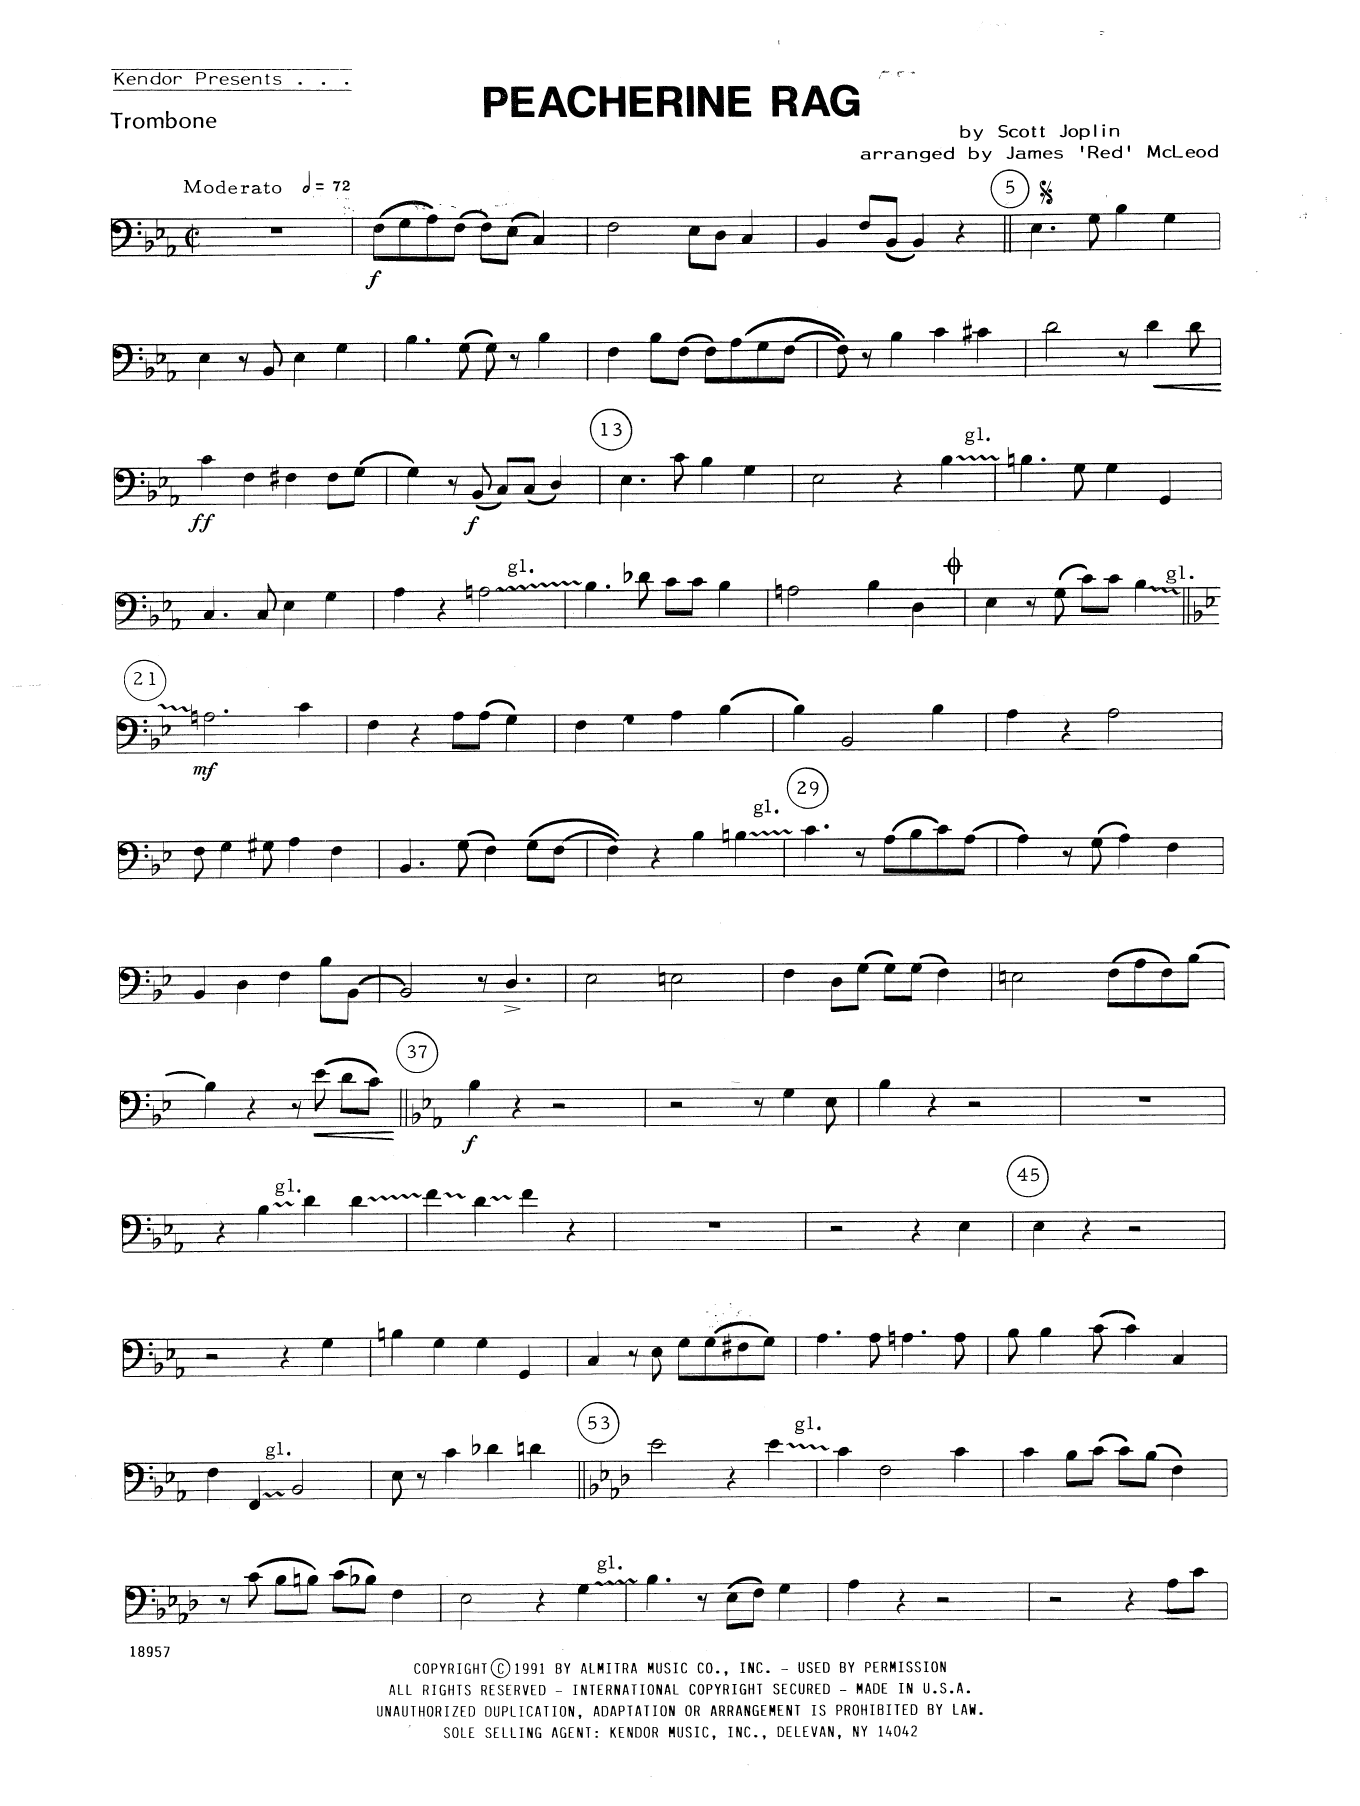 Peacherine Rag - Trombone (Brass Ensemble) von James 'Red' McLeod